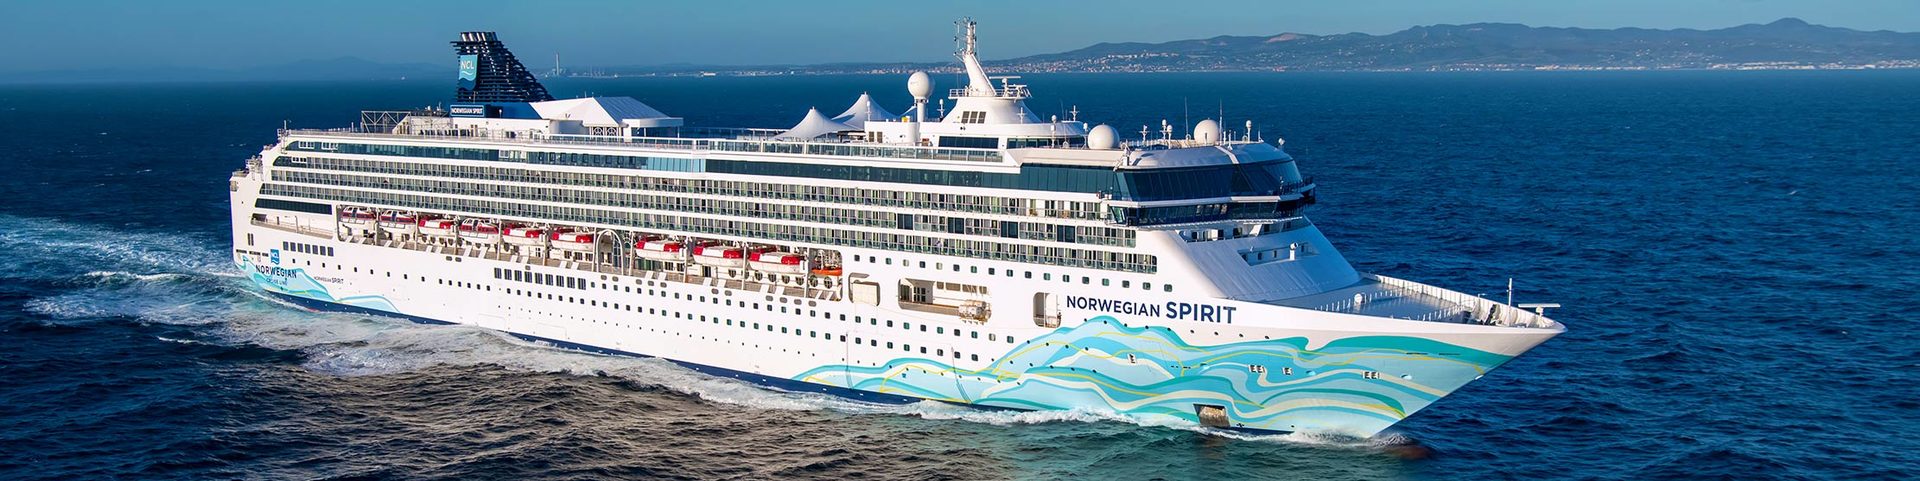 Norwegian Cruise Line predstavuje po viac ako 100miliónovej revitalizácii zbrusu novú Norwegian Spirit 